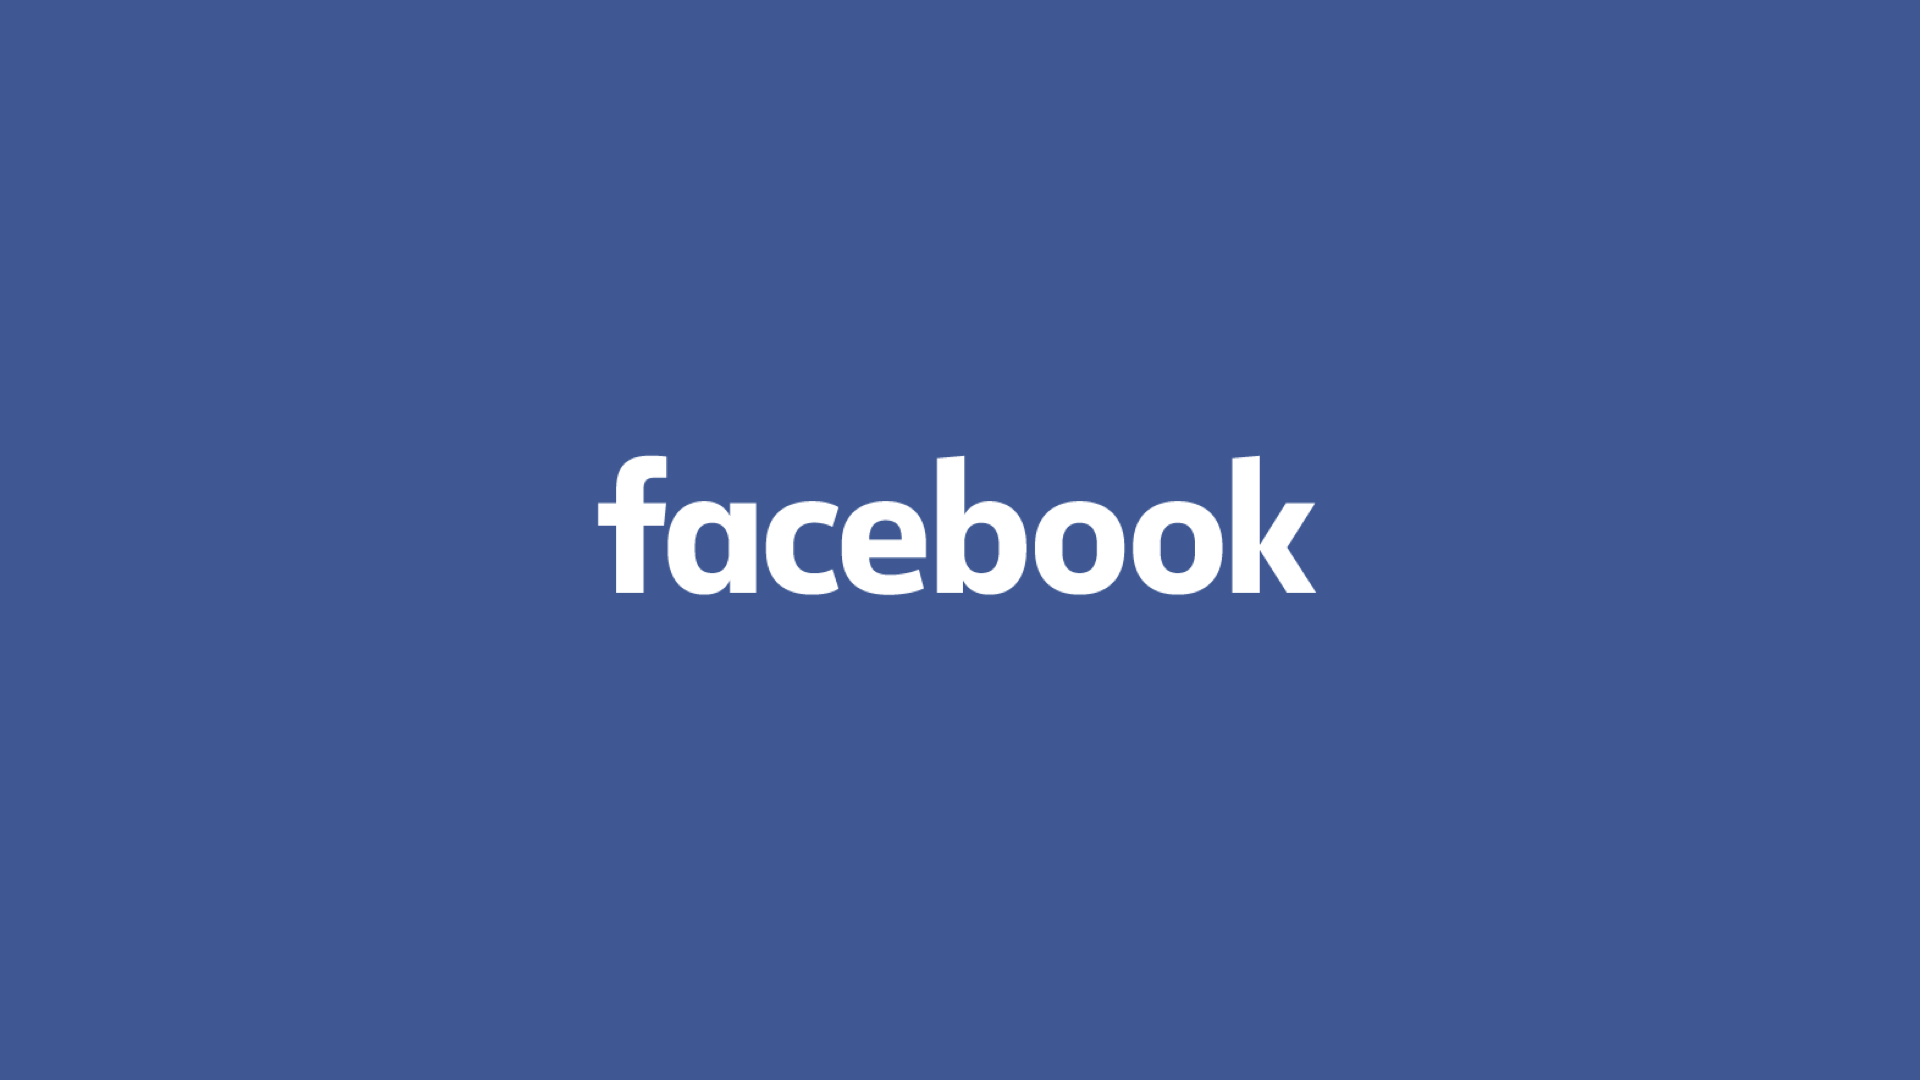 फेसबुकका लगानीकर्ताले एक वर्षमै गुमाए ५ खर्ब २० अर्ब डलर